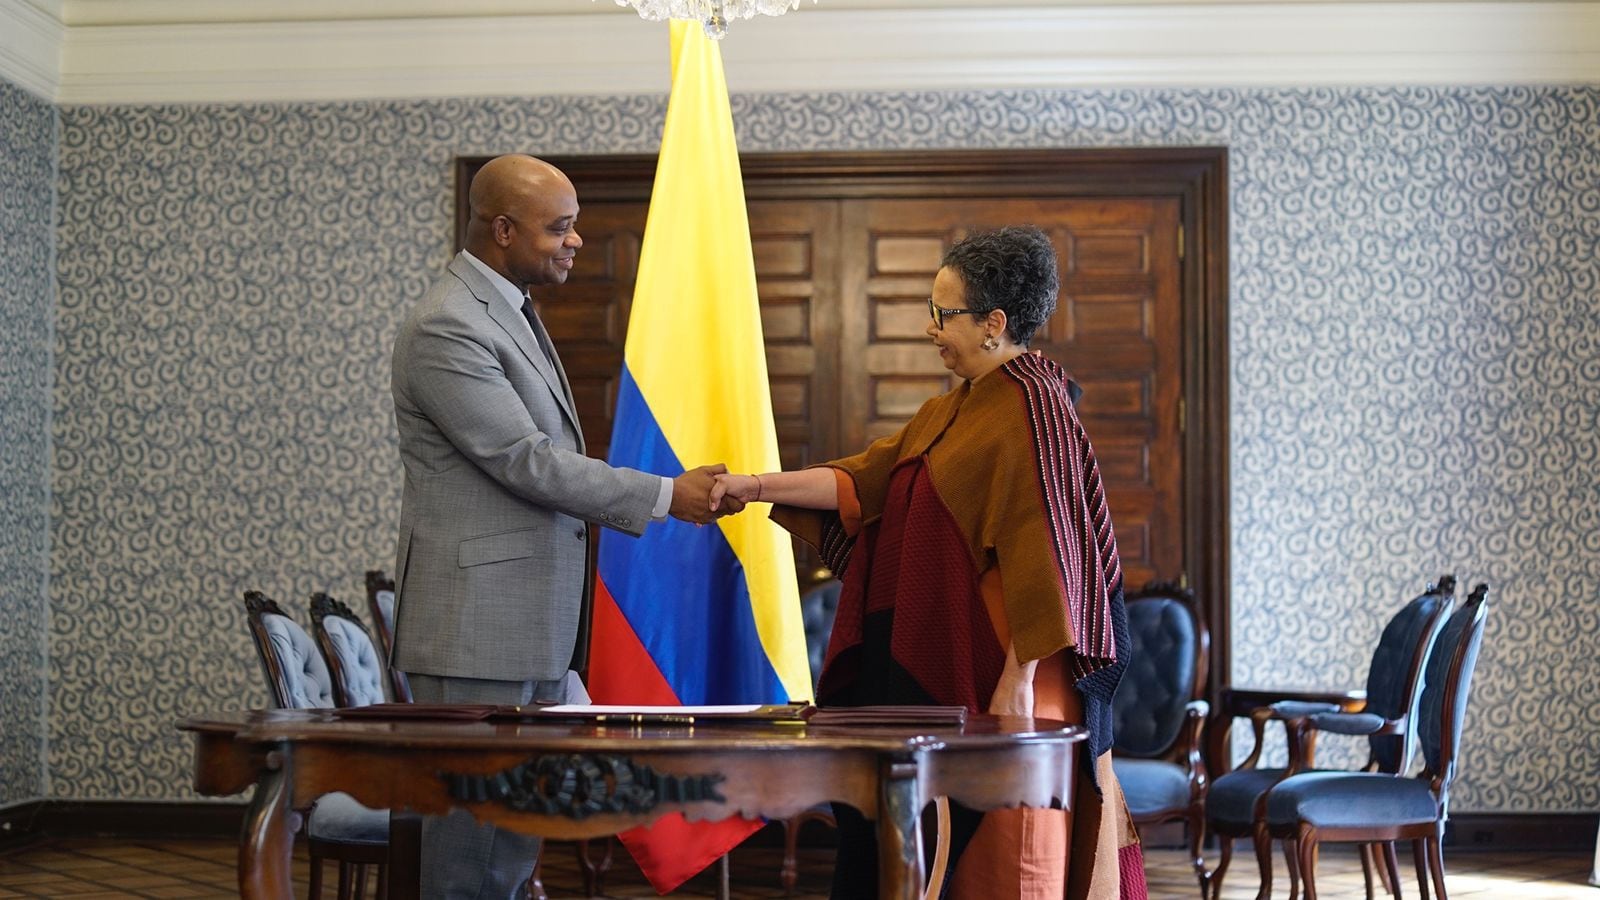 El canciller posesionó a Claudia Mosquera Rosero como embajadora de Colombia ante Senegal, marcando un hito en el fortalecimiento de las relaciones bilaterales entre ambos países - crédito Ministerio de Relaciones Exteriores